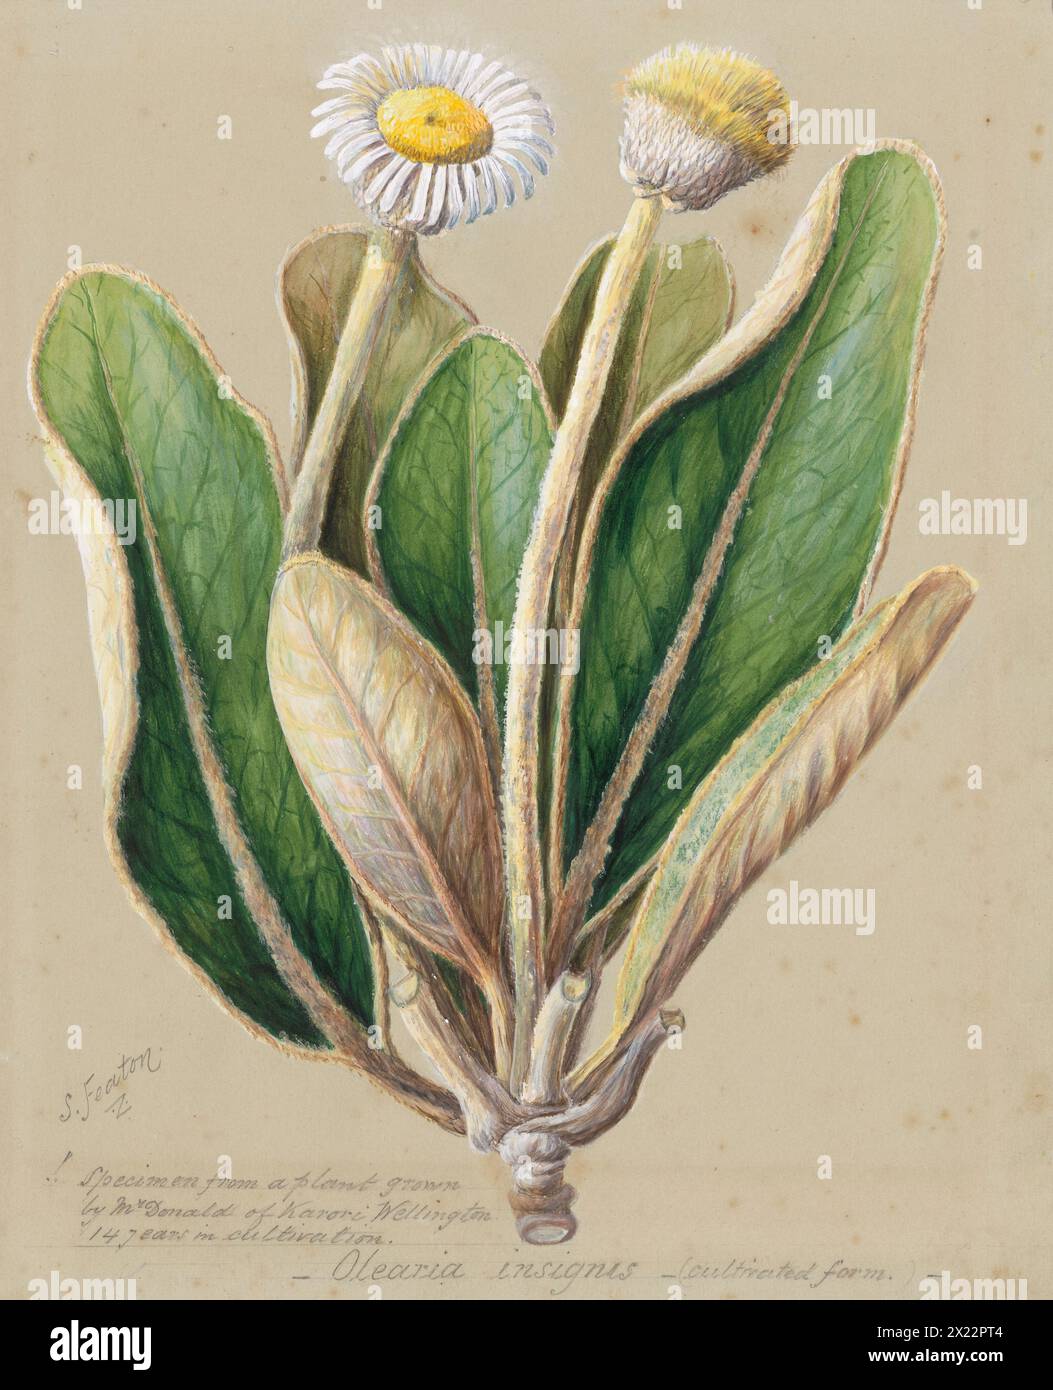 Pachystegia insignis, c.1885. Stock Photo